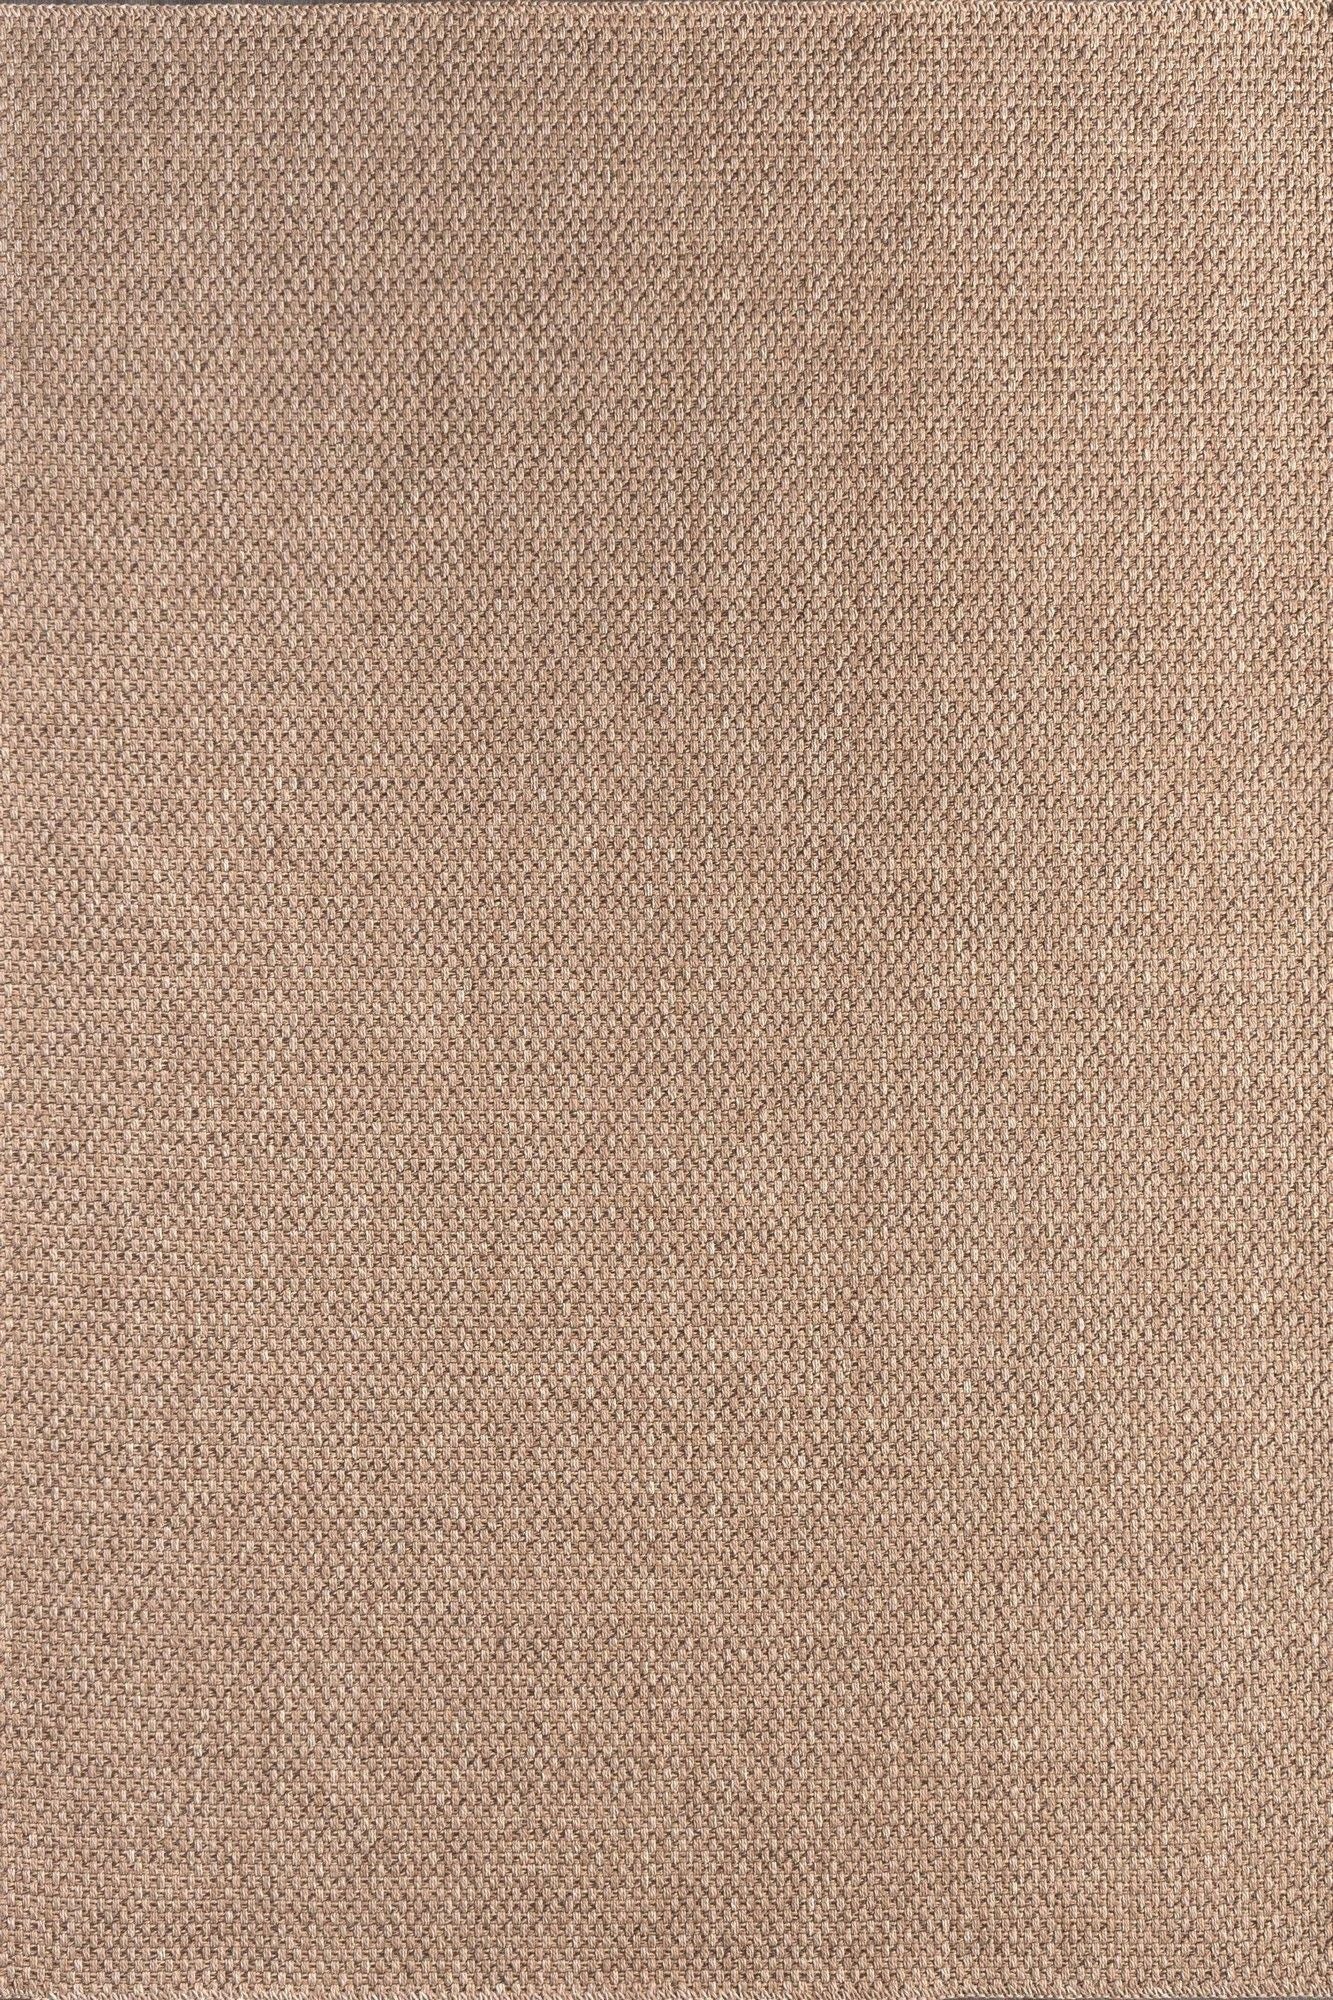 Rusticana 3101 - Hall Carpet (200 x 500)